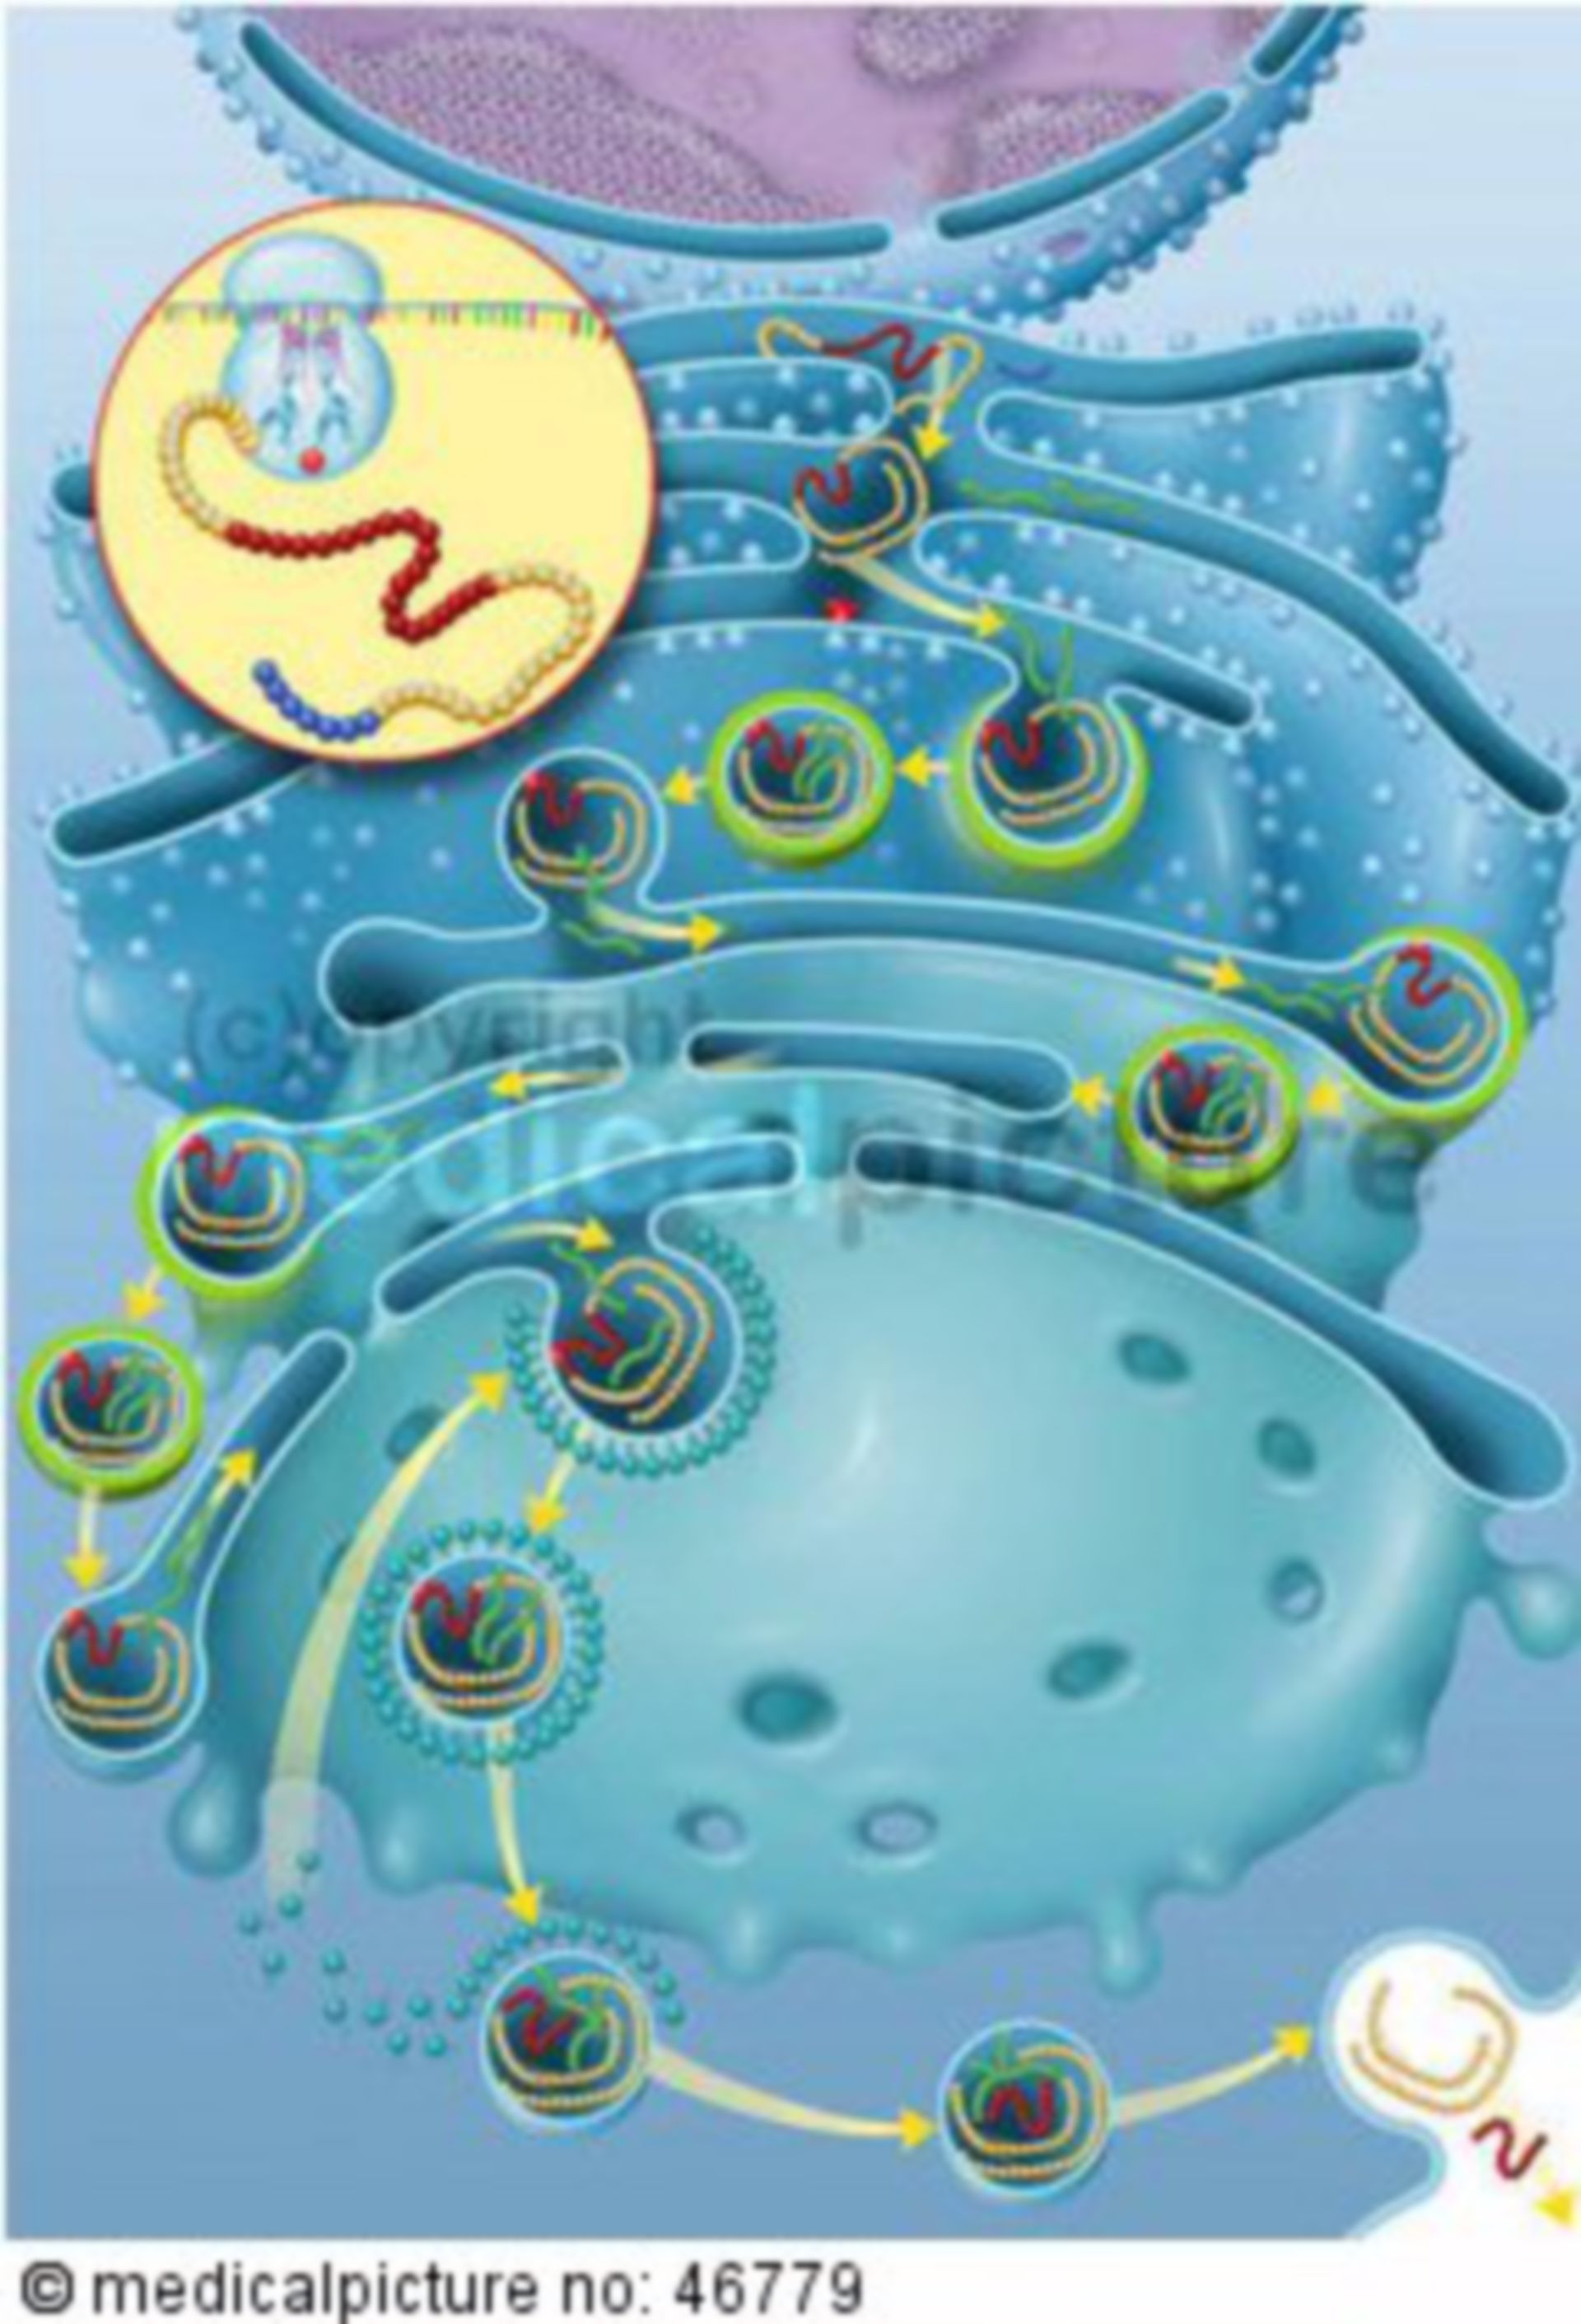  Insulin Biosynthese der gesunden Beta-Zelle 
